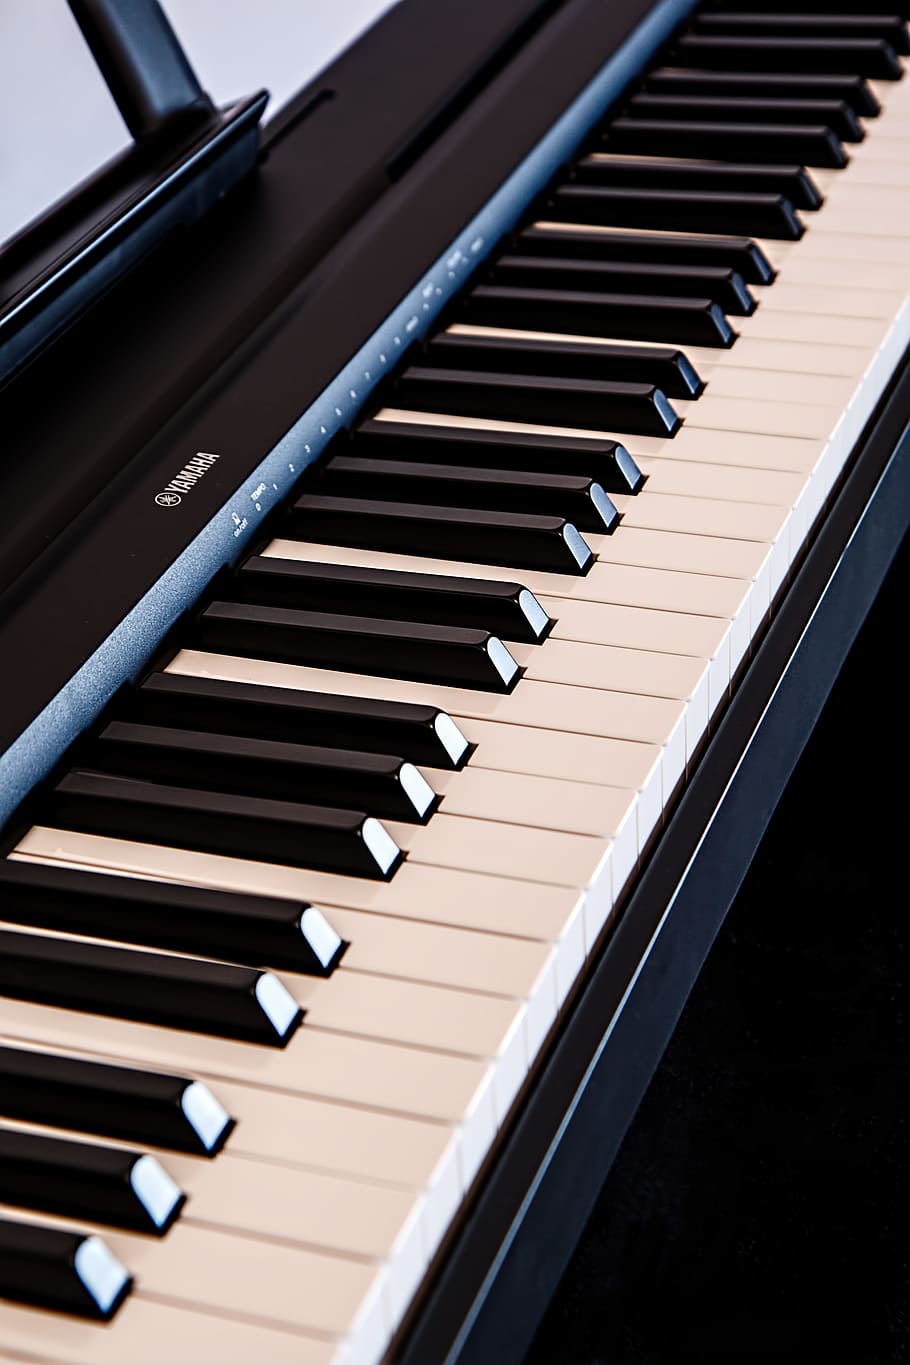 close-up photography of white and black Yamaha electronic keyboard